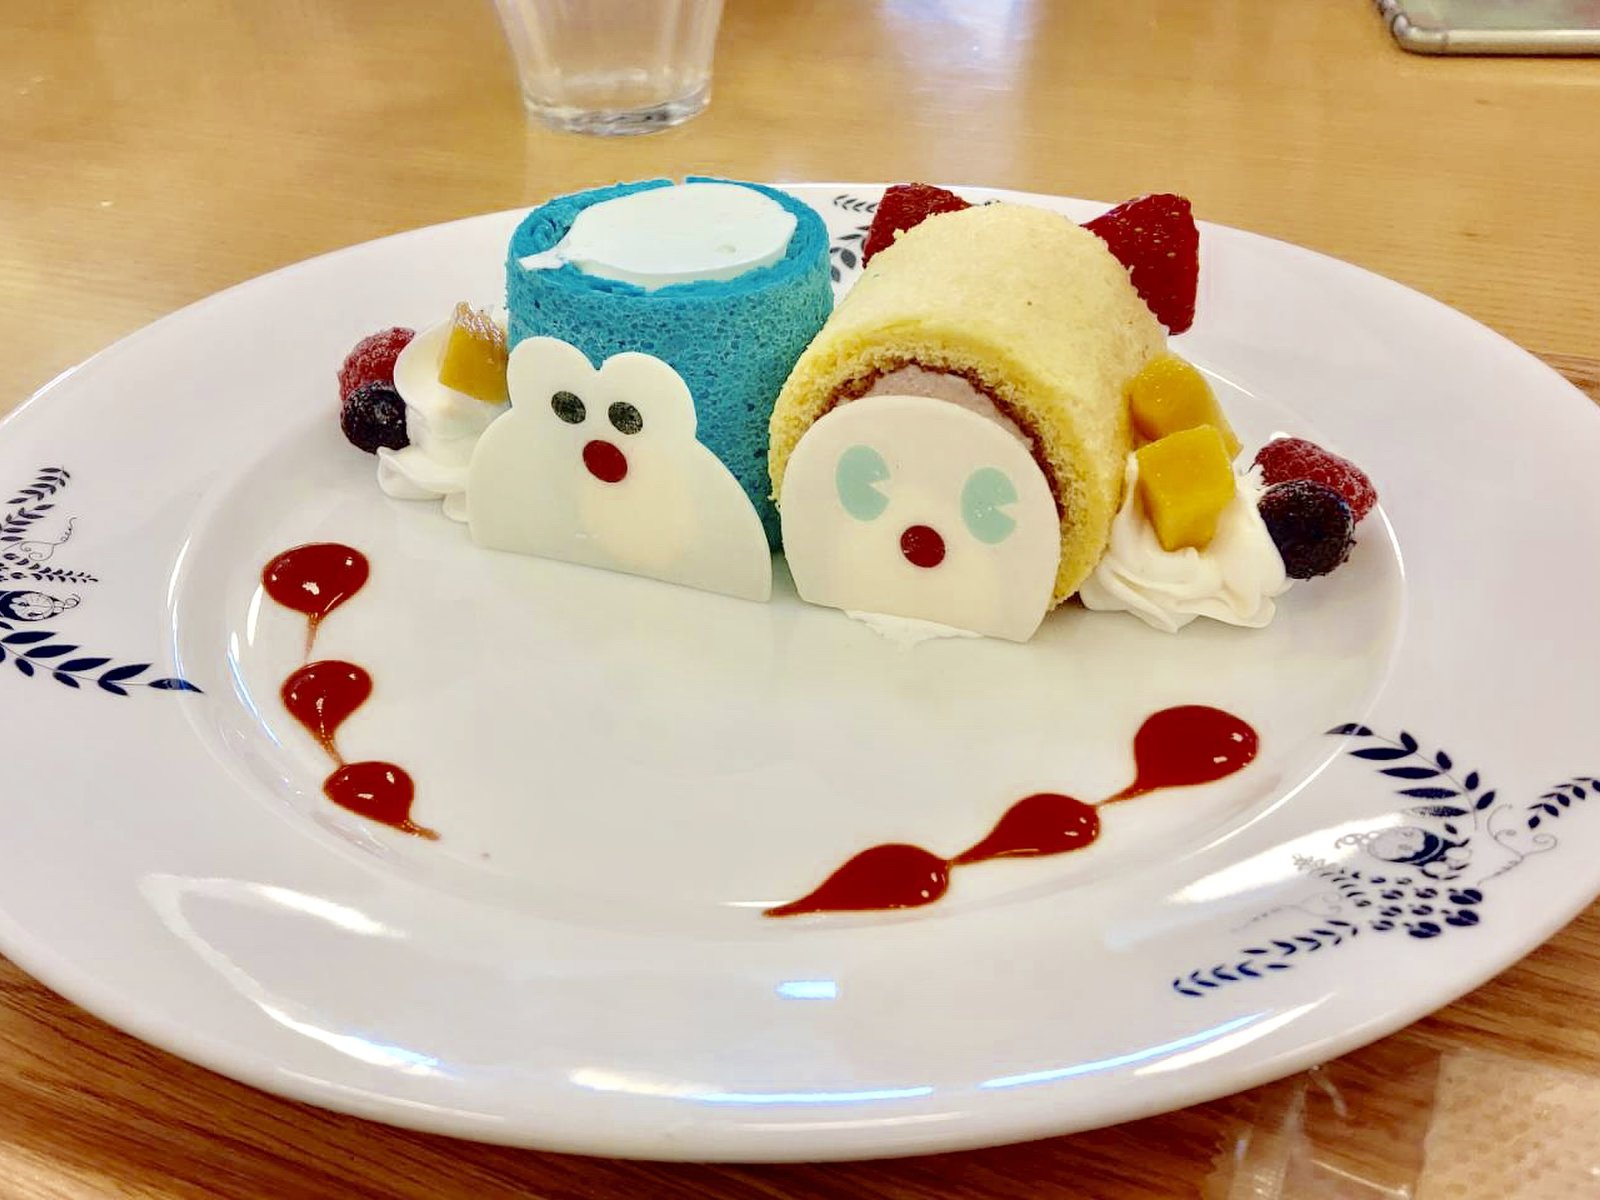 川崎で1番可愛い ドラえもんカフェ クリームソーダ味のスイーツが絶品 Playlife プレイライフ